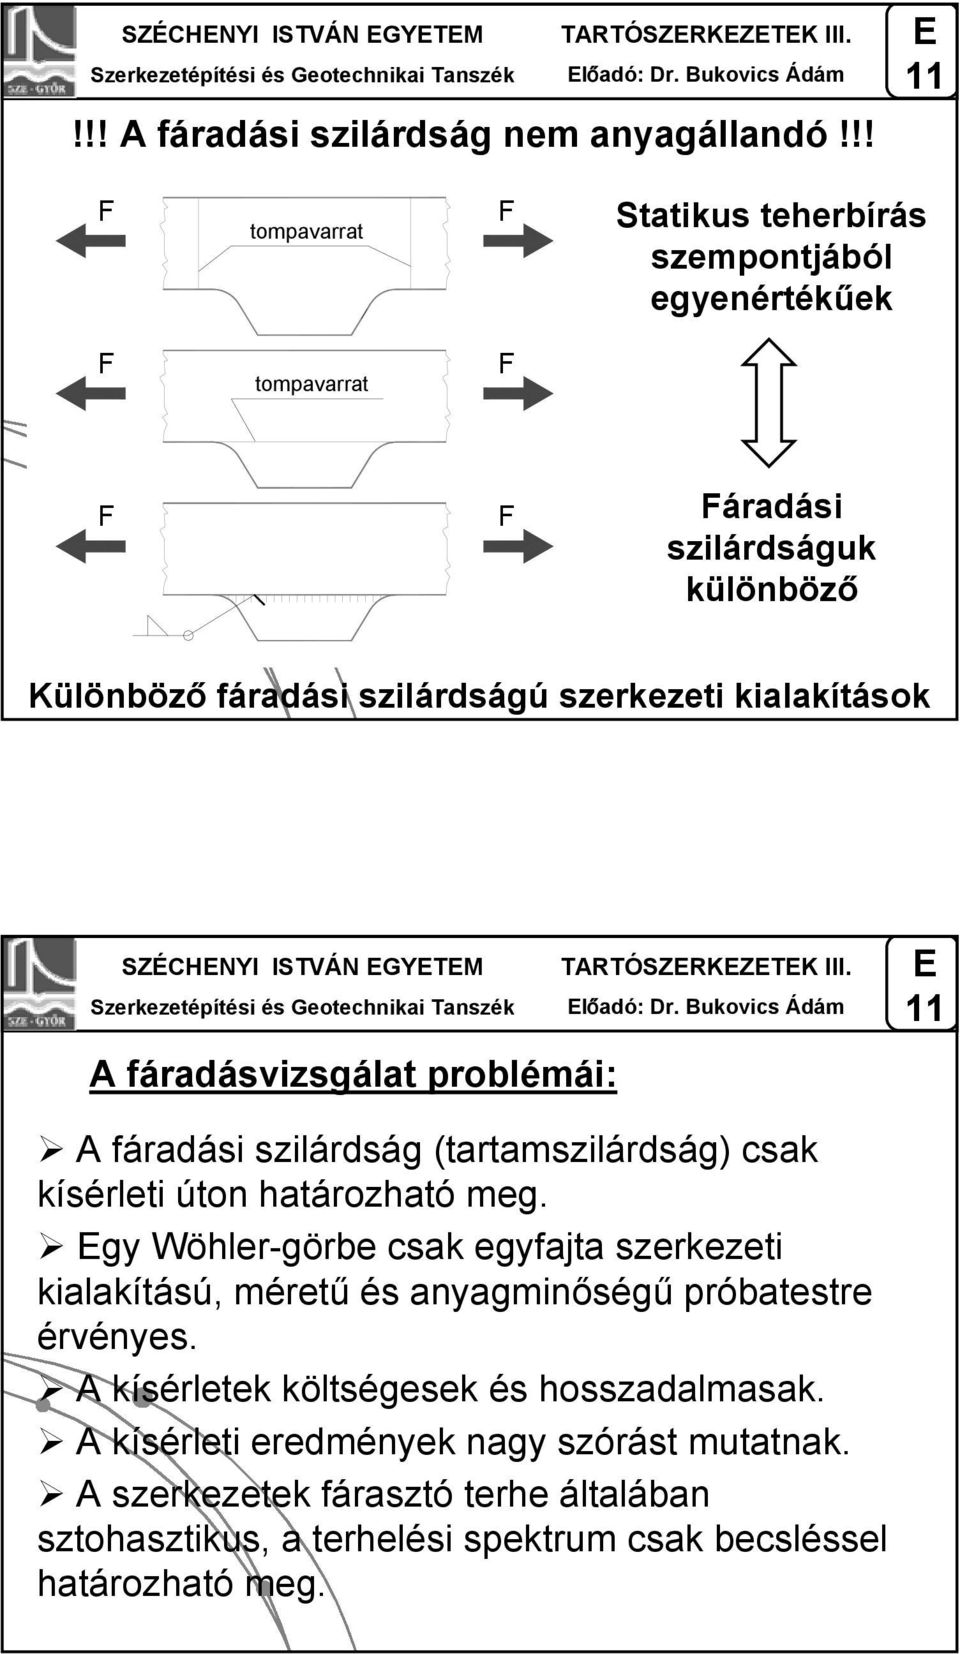 ISTVÁN GYTM TARTÓSZRKZTK III. lőadó: Dr. Bukovics Ádám A fáradásvizsgálat problémái: A fáradási szilárdság (tartamszilárdság) csak kísérleti úton határozható meg.